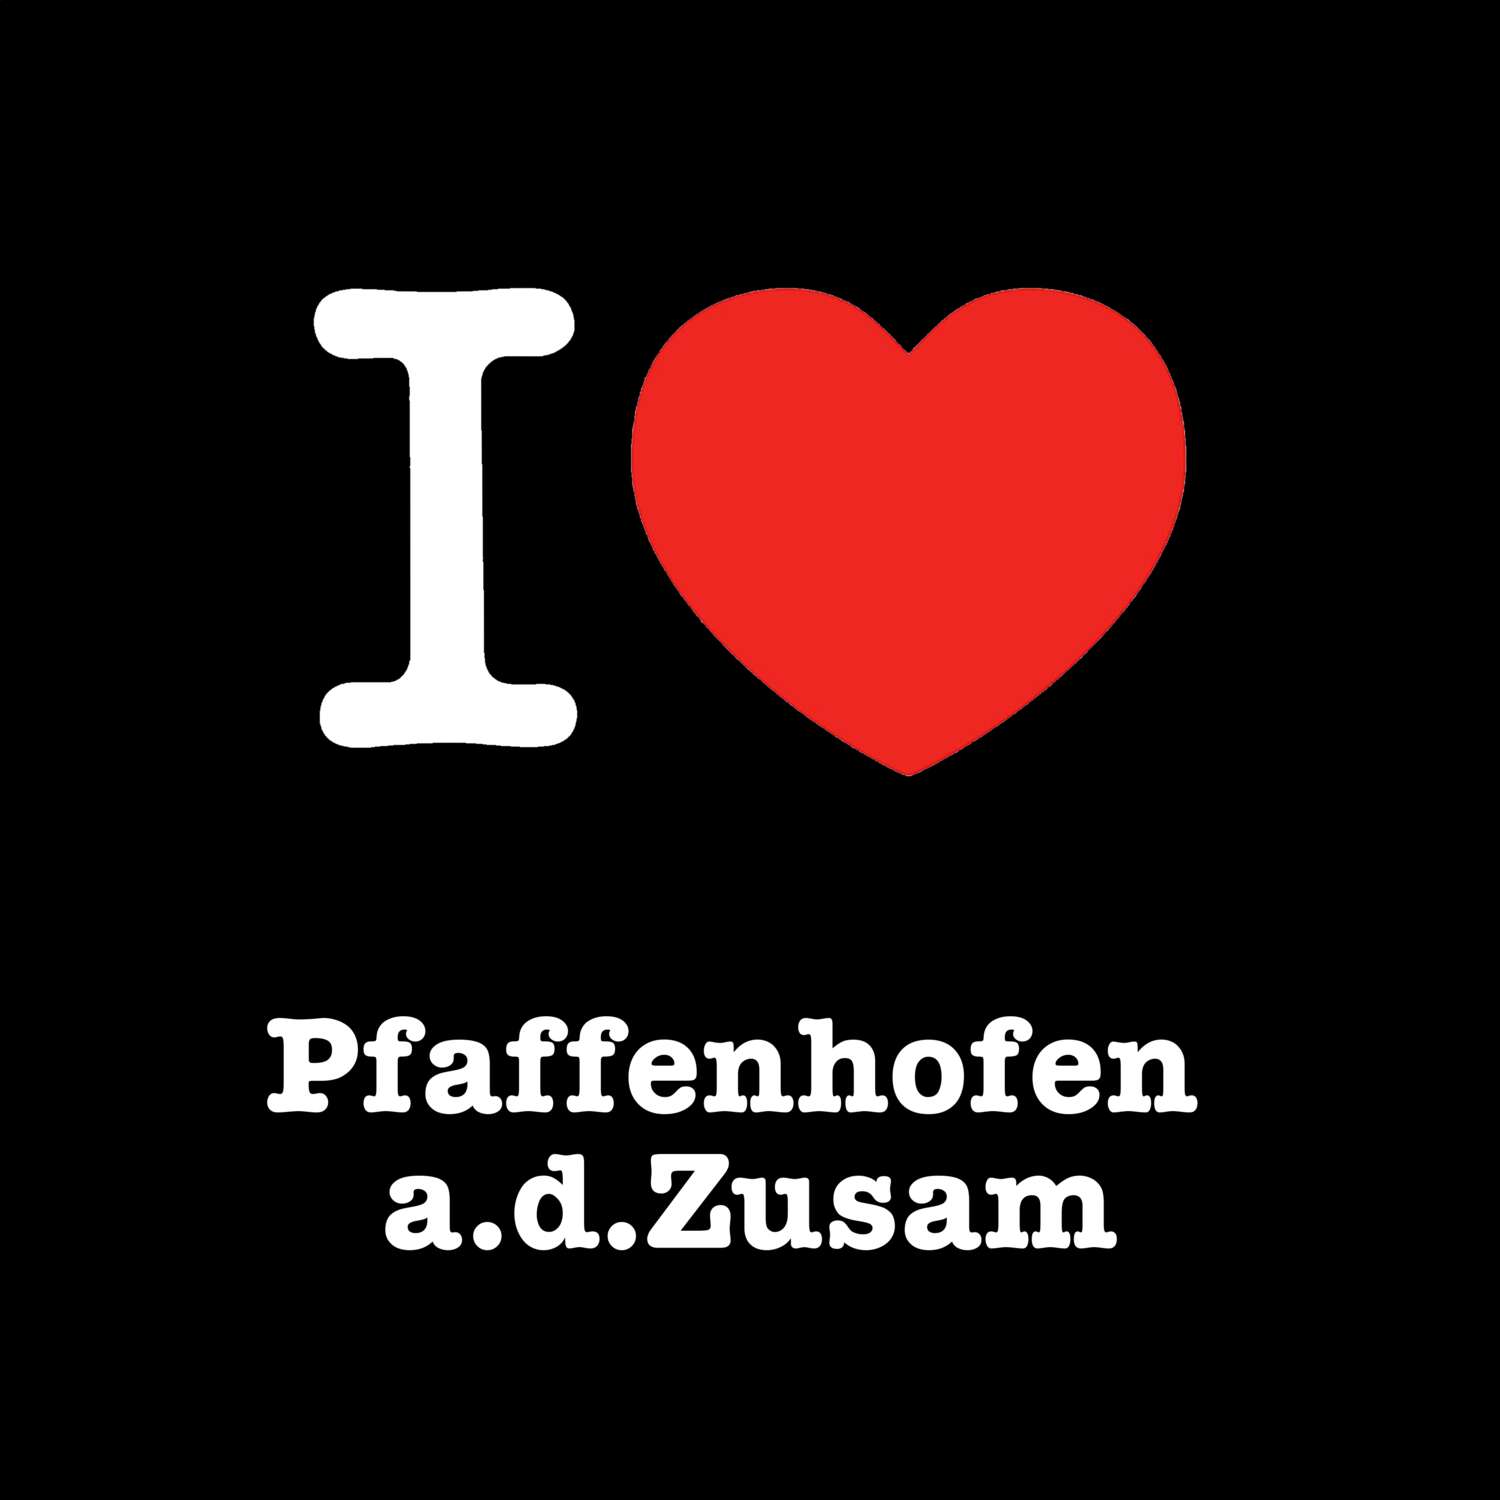 Pfaffenhofen a.d.Zusam T-Shirt »I love«